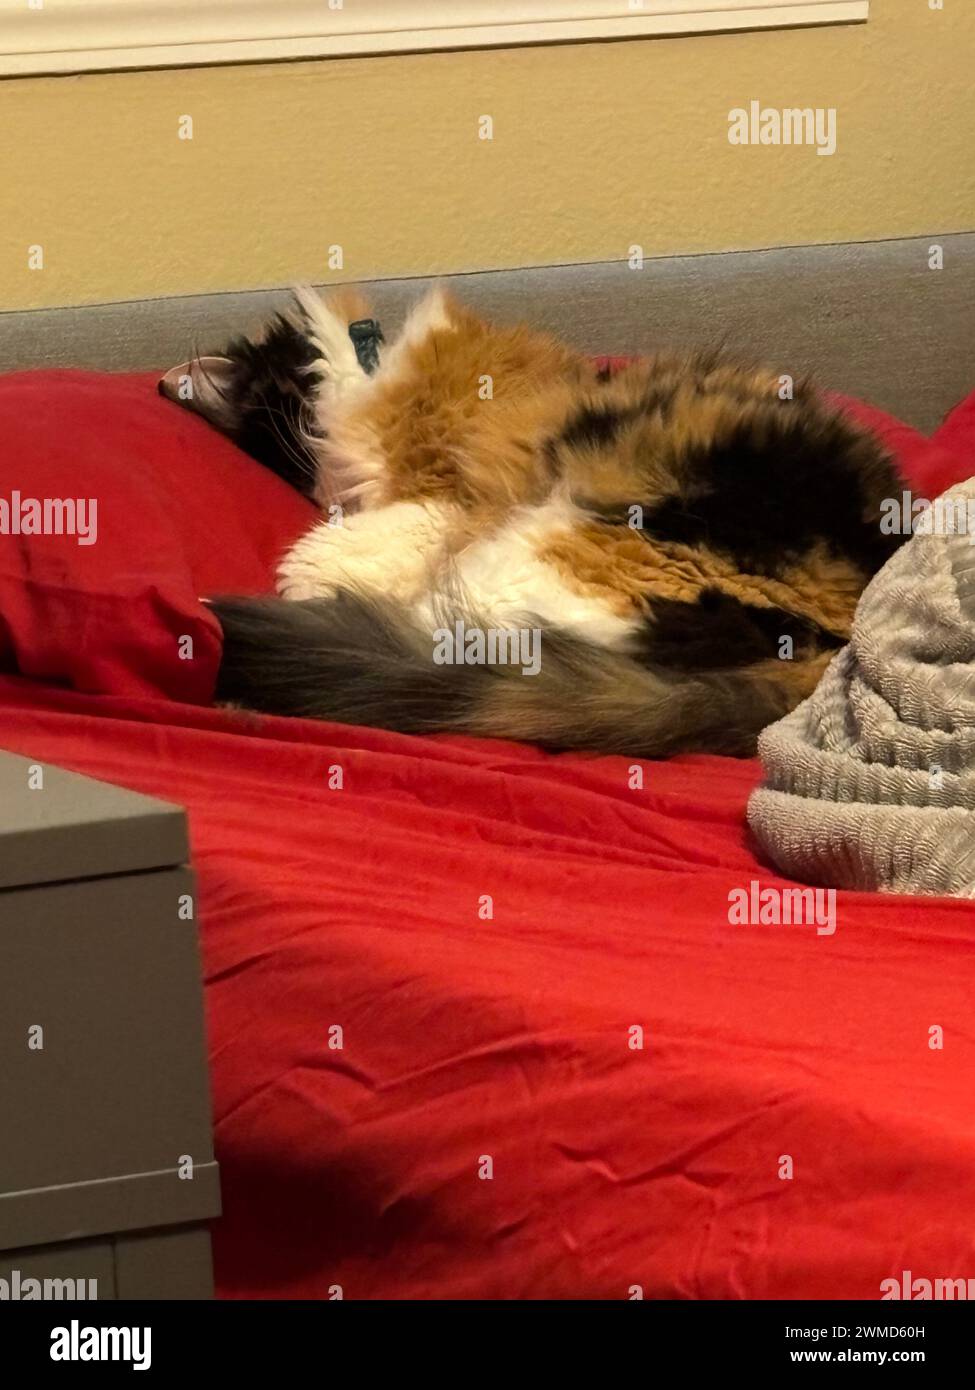 Gatto appoggiato sul letto rosso accanto al vano portaoggetti grigio in una stanza Foto Stock